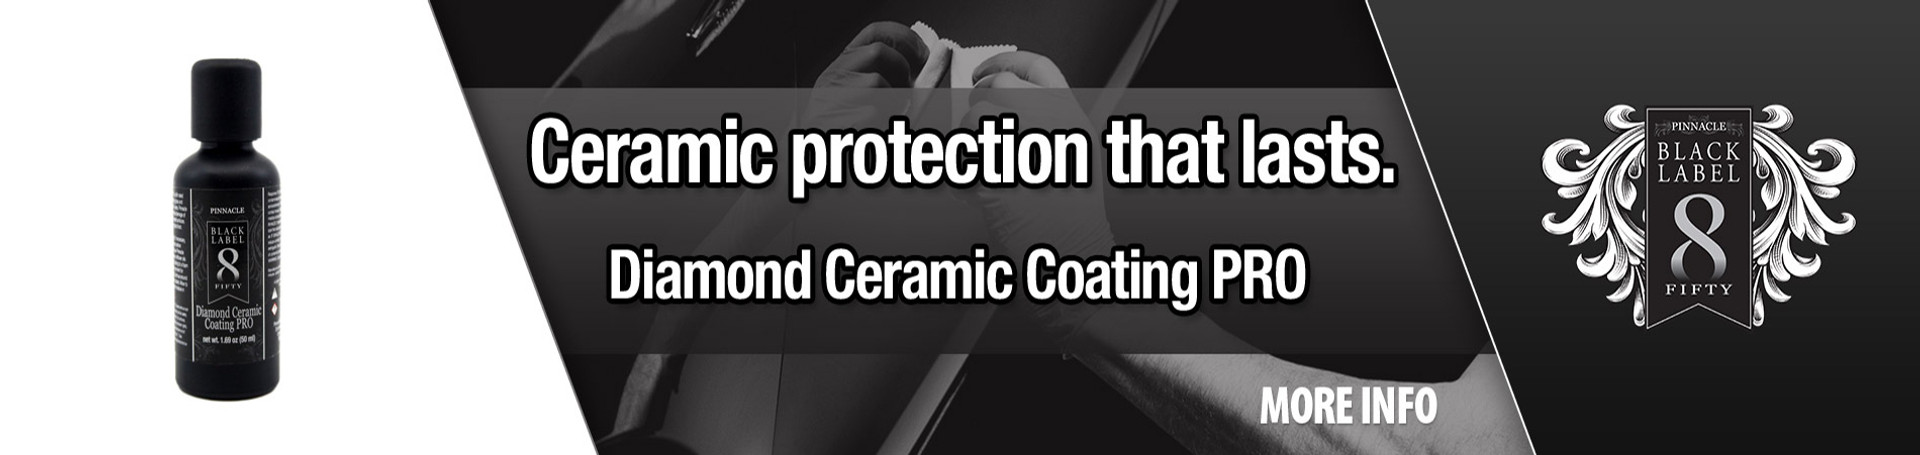 Ceramic Protection that last- Diamond Ceramic Coating Pro